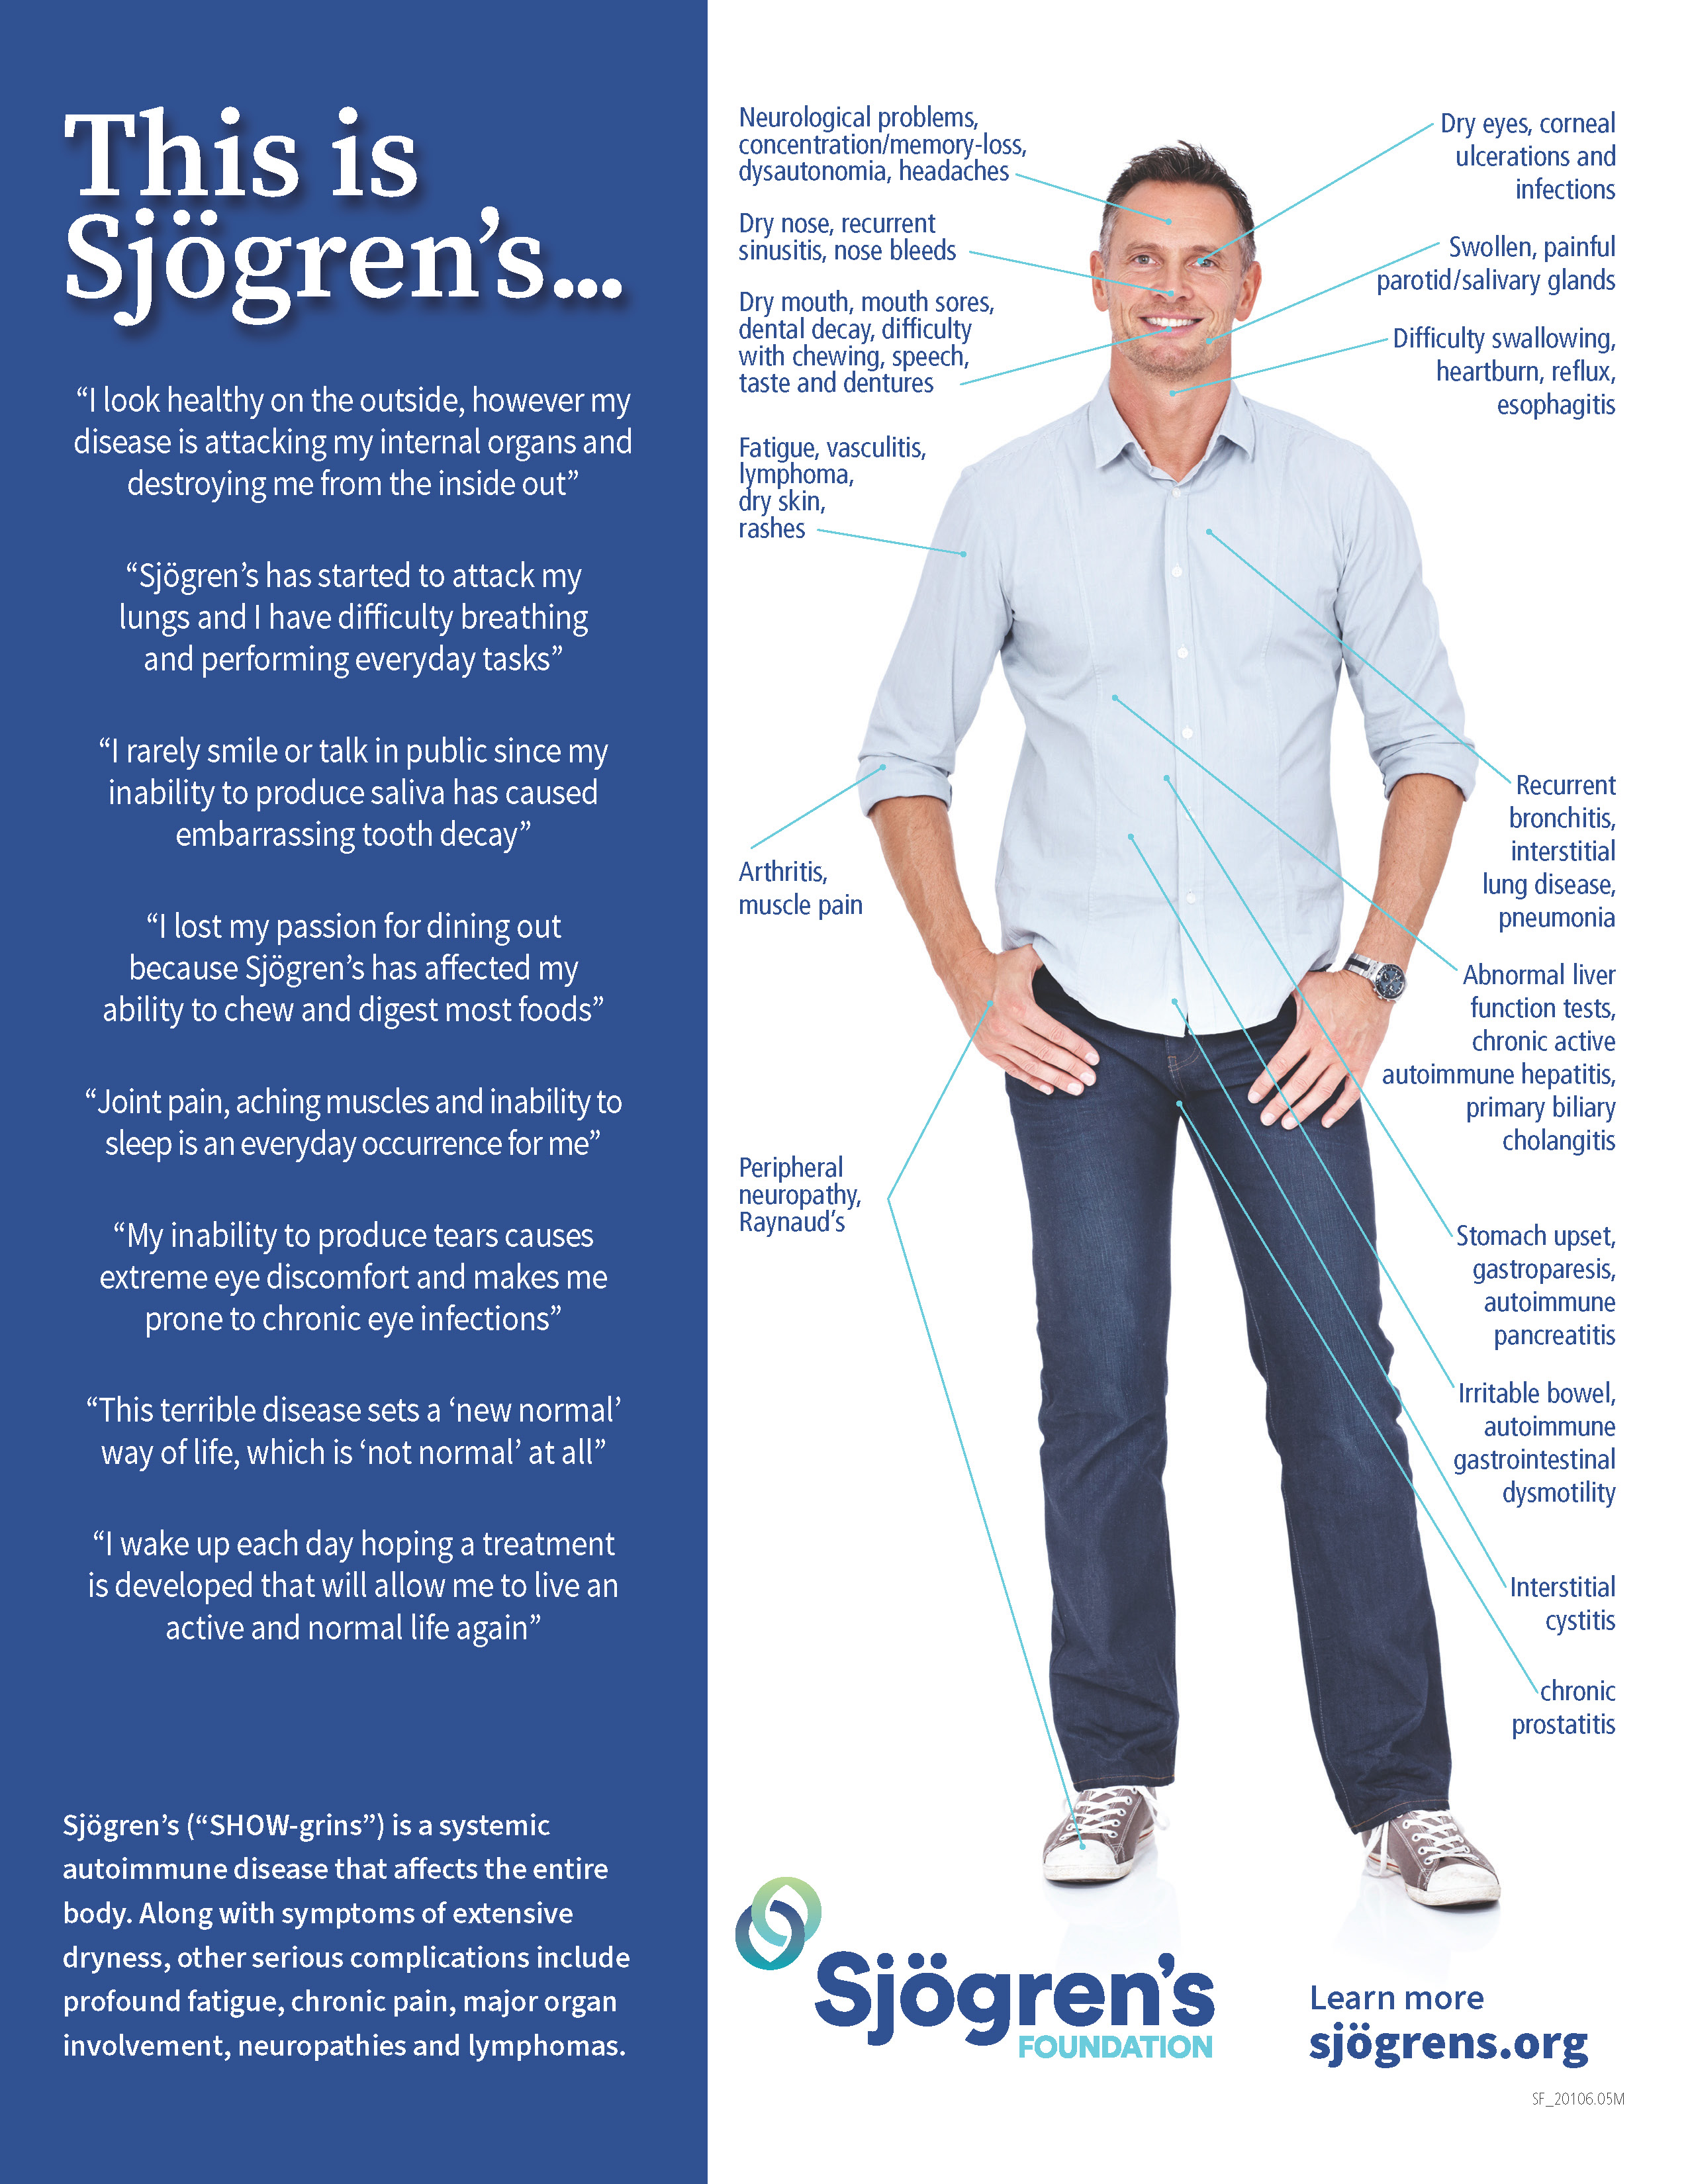 This is Sjögren's Infographic for Men